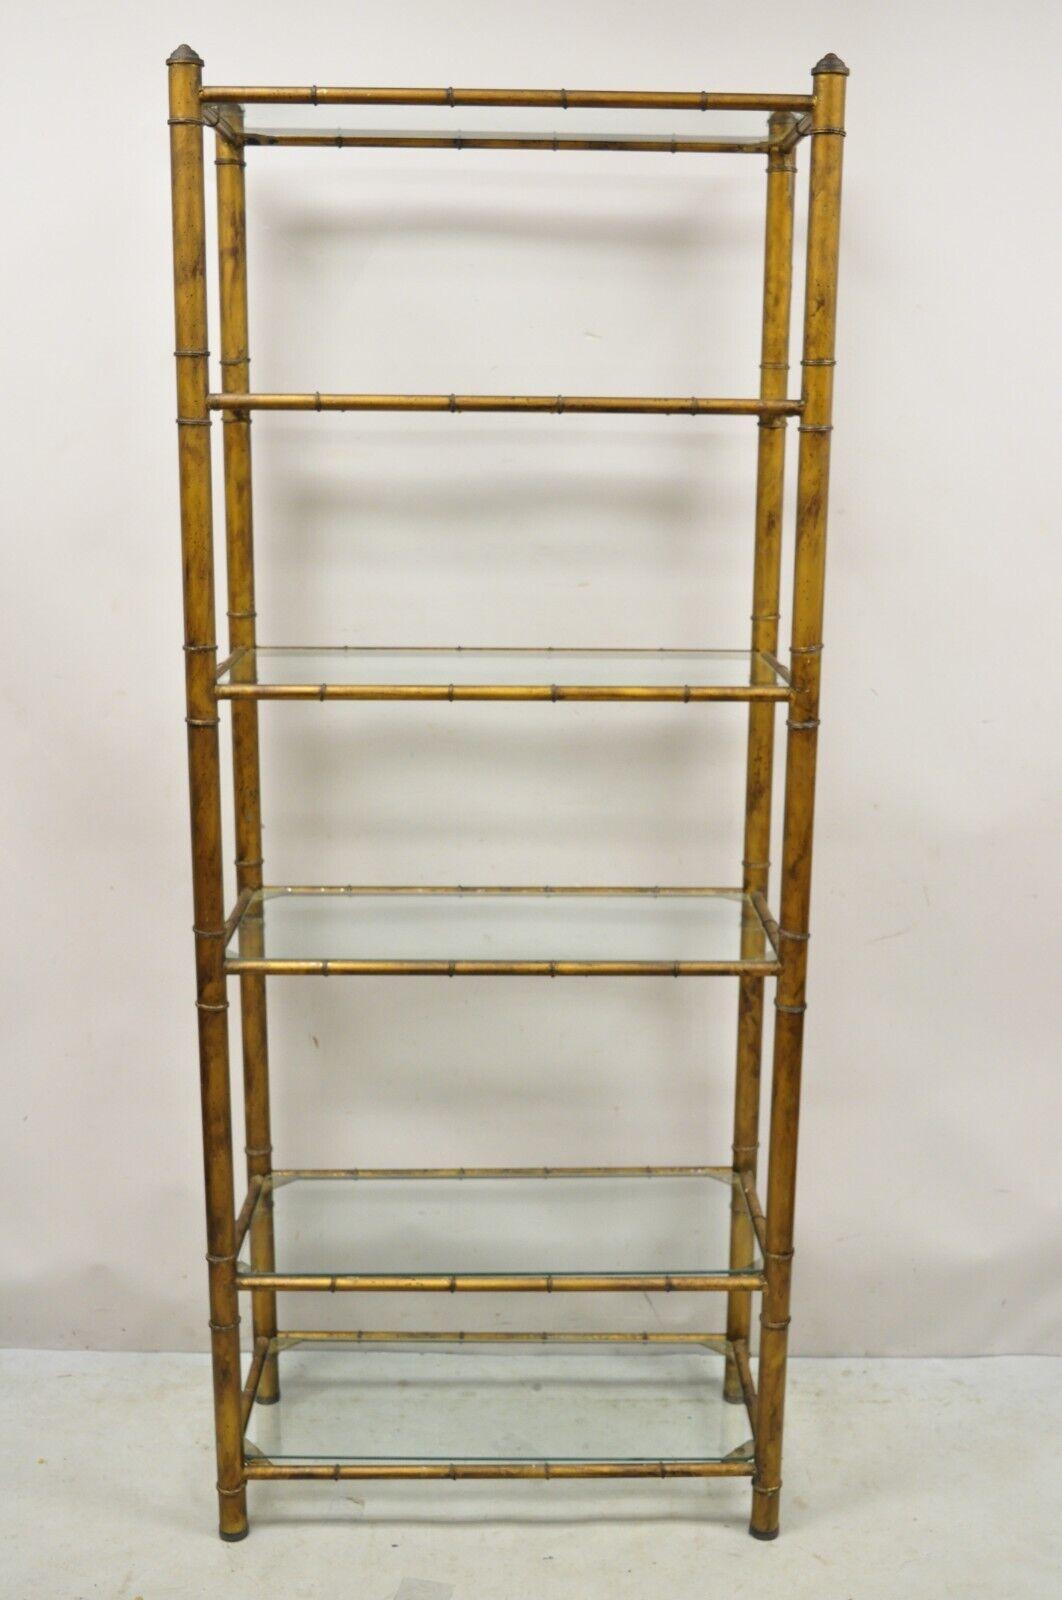 Vintage Hollywood Regency Faux Bamboo Steel Metal Gold 6 Tier Etagere Shelf Bookcase. Cet article est composé d'un cadre en acier, métal et faux bambou, de 6 étagères en verre, d'une finition peinte en or foncé, d'un très bel article vintage, d'un